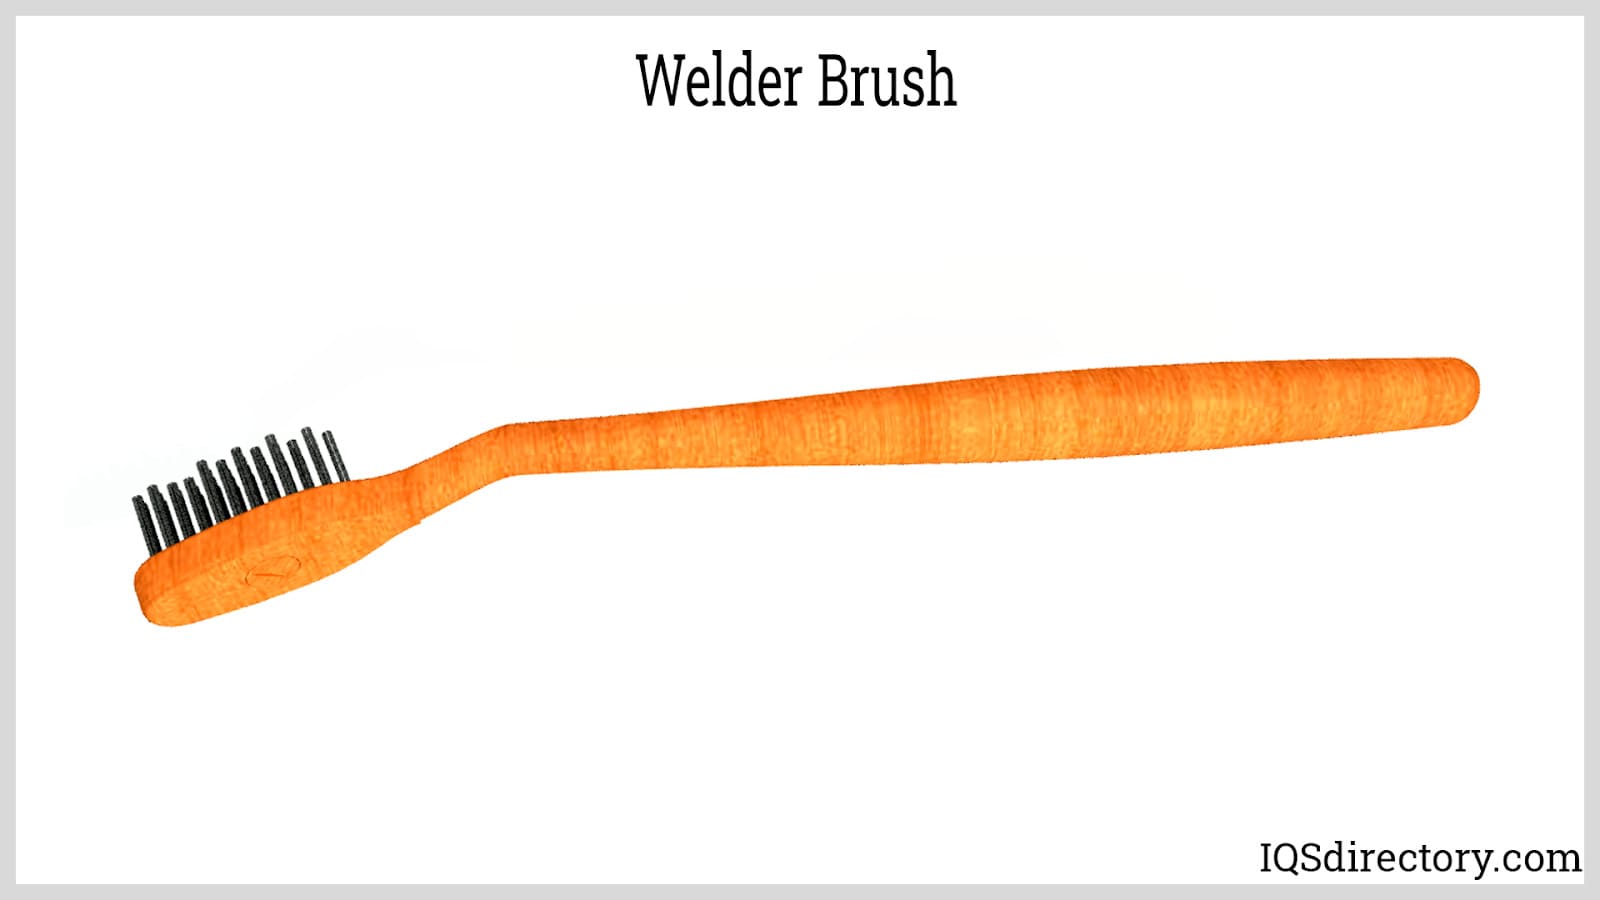 Welder Brush